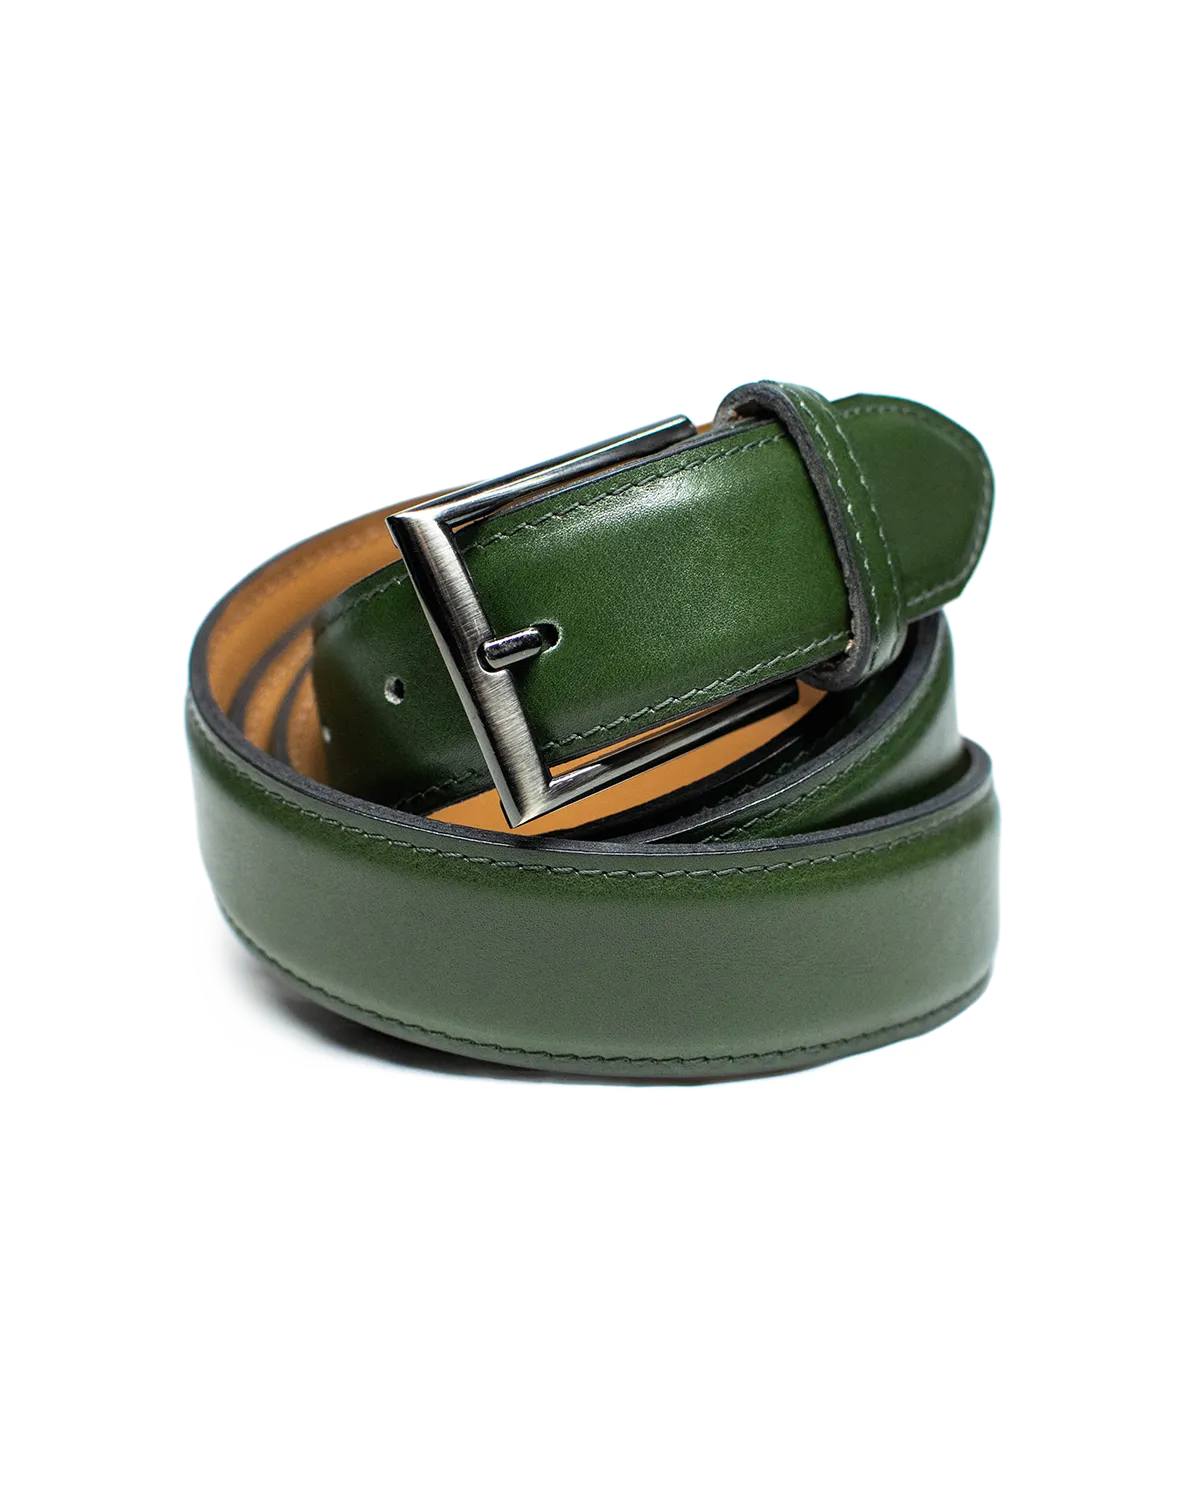 Cinturón clásico en color verde